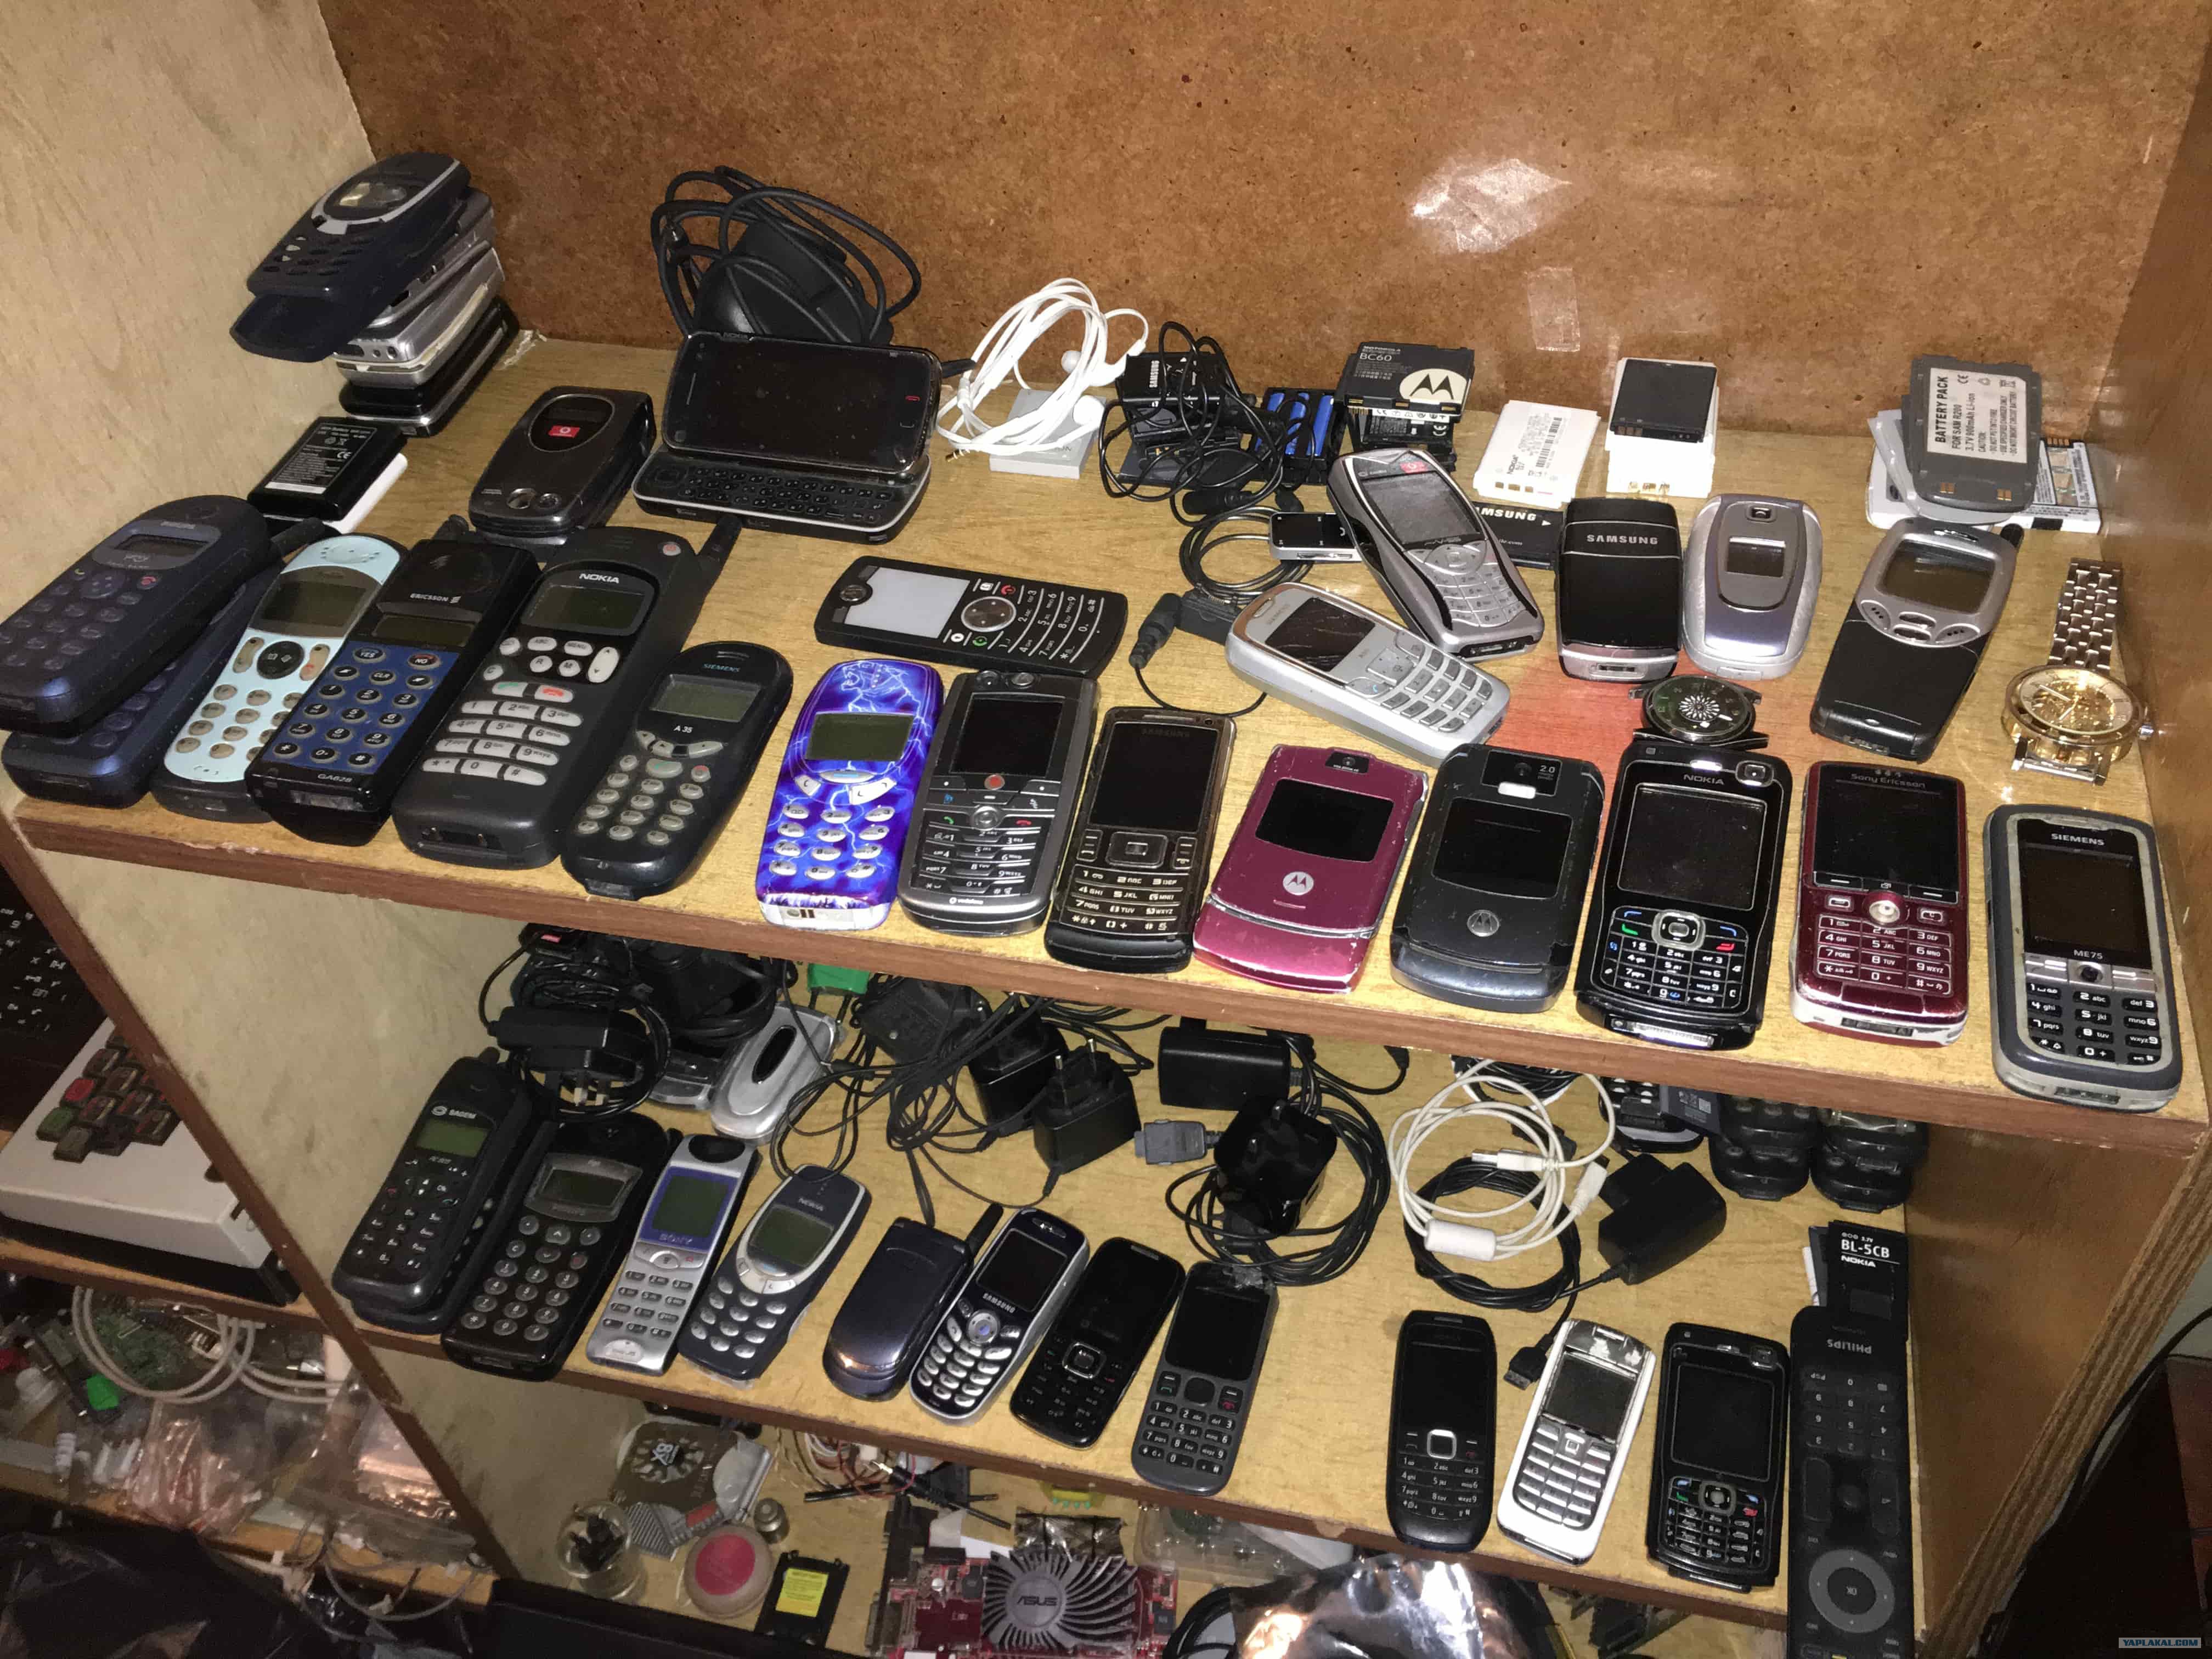 Бу телефоны в минске. Коллекция телефонов. Коллекция старых телефонов. Б/У телефоны. Старые мобильные телефоны.